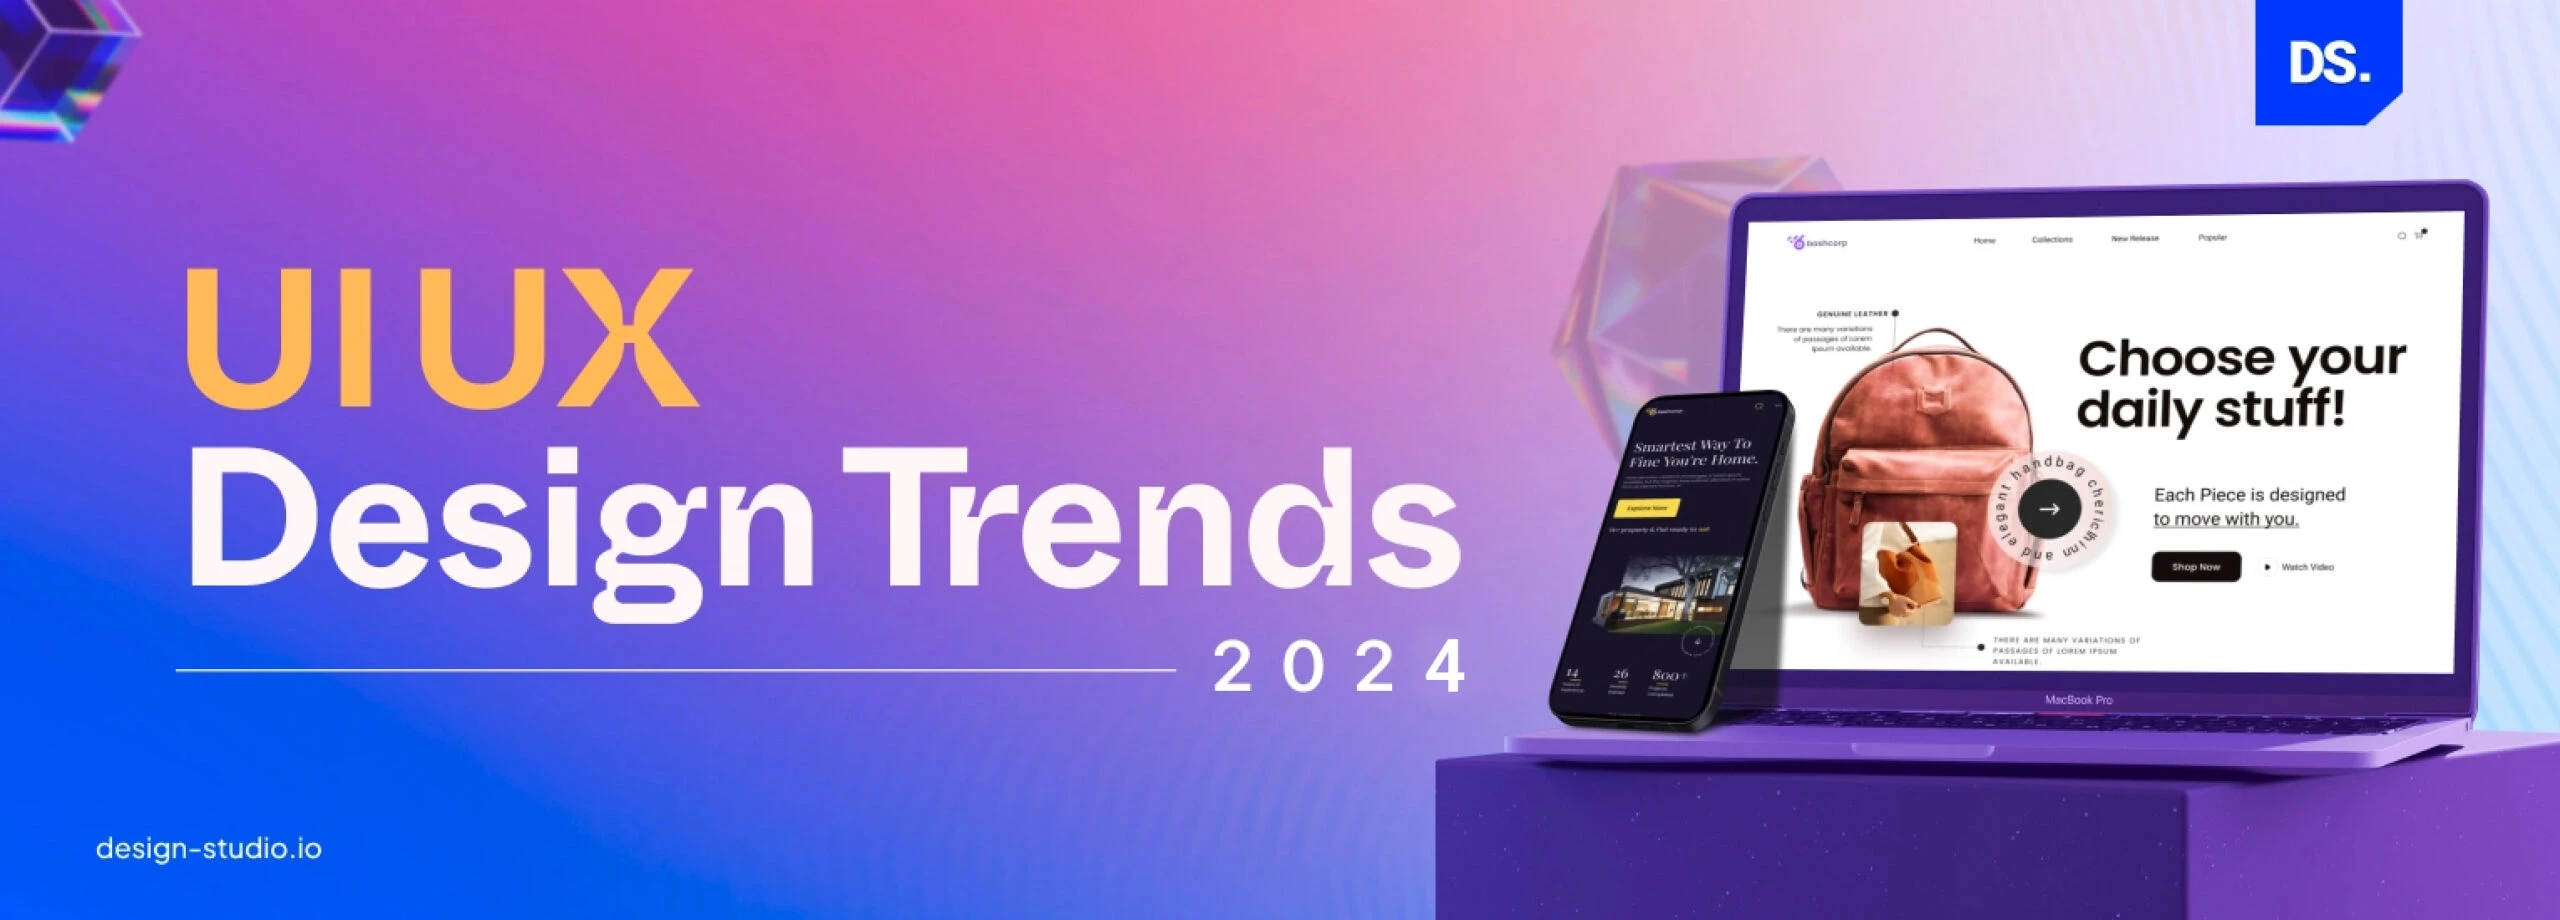 Top UI/UX Design Trends